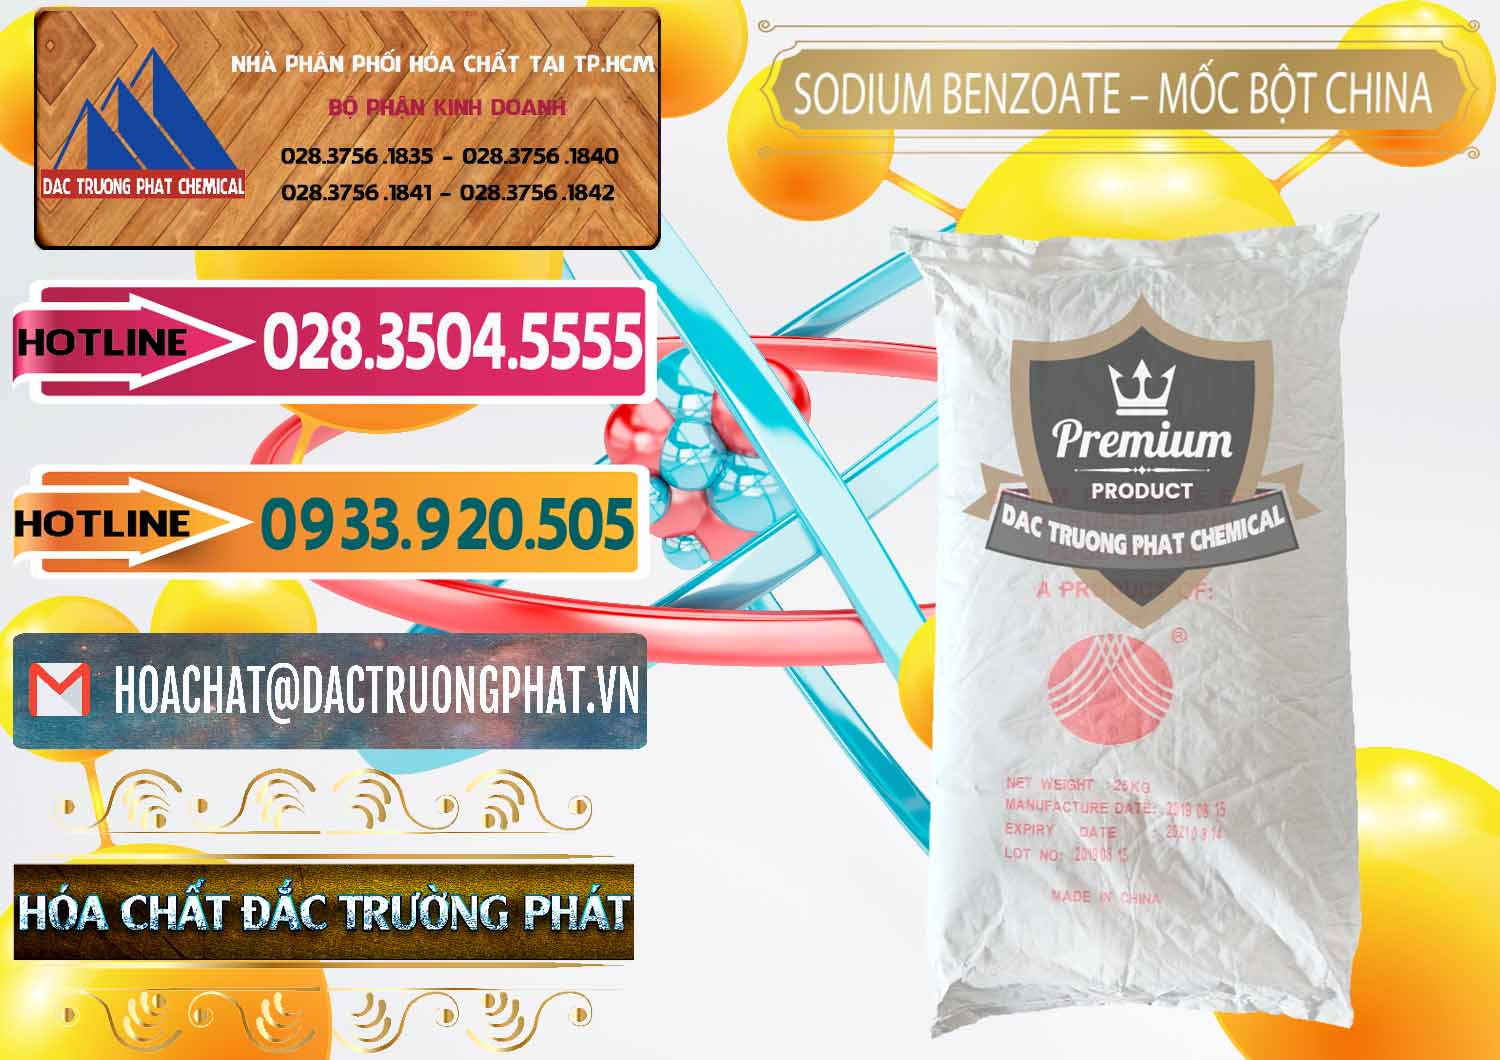 Đơn vị chuyên bán và cung ứng Sodium Benzoate - Mốc Bột Chữ Cam Food Grade Trung Quốc China - 0135 - Cty bán & cung cấp hóa chất tại TP.HCM - dactruongphat.vn